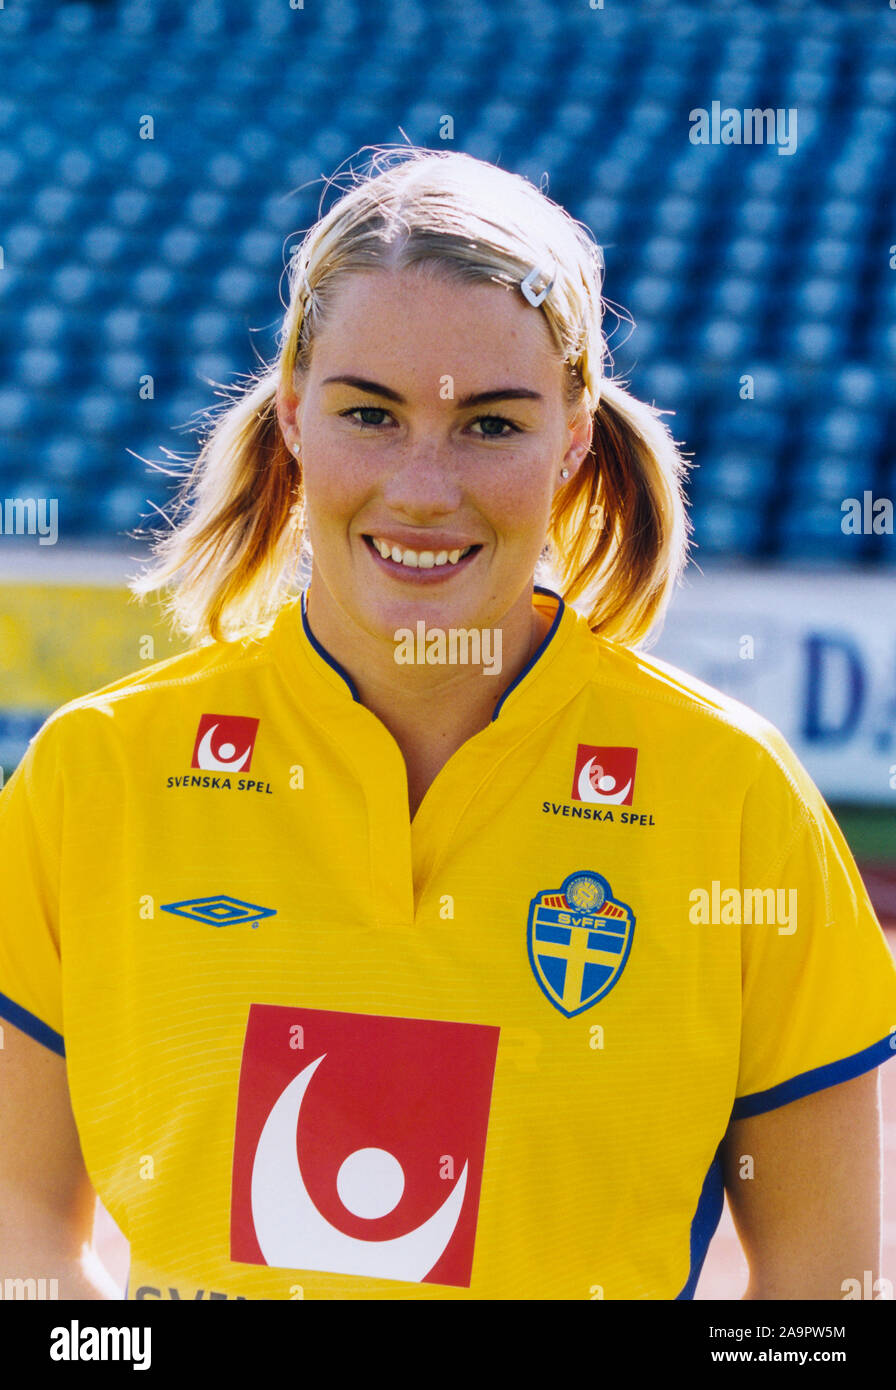 Hanna Marklund schwedische weiblichen footballer Umeå IK, heute arbeitet sie als Experte für das schwedische Fernsehen stand männlichen und weiblichen Fußball Stockfoto